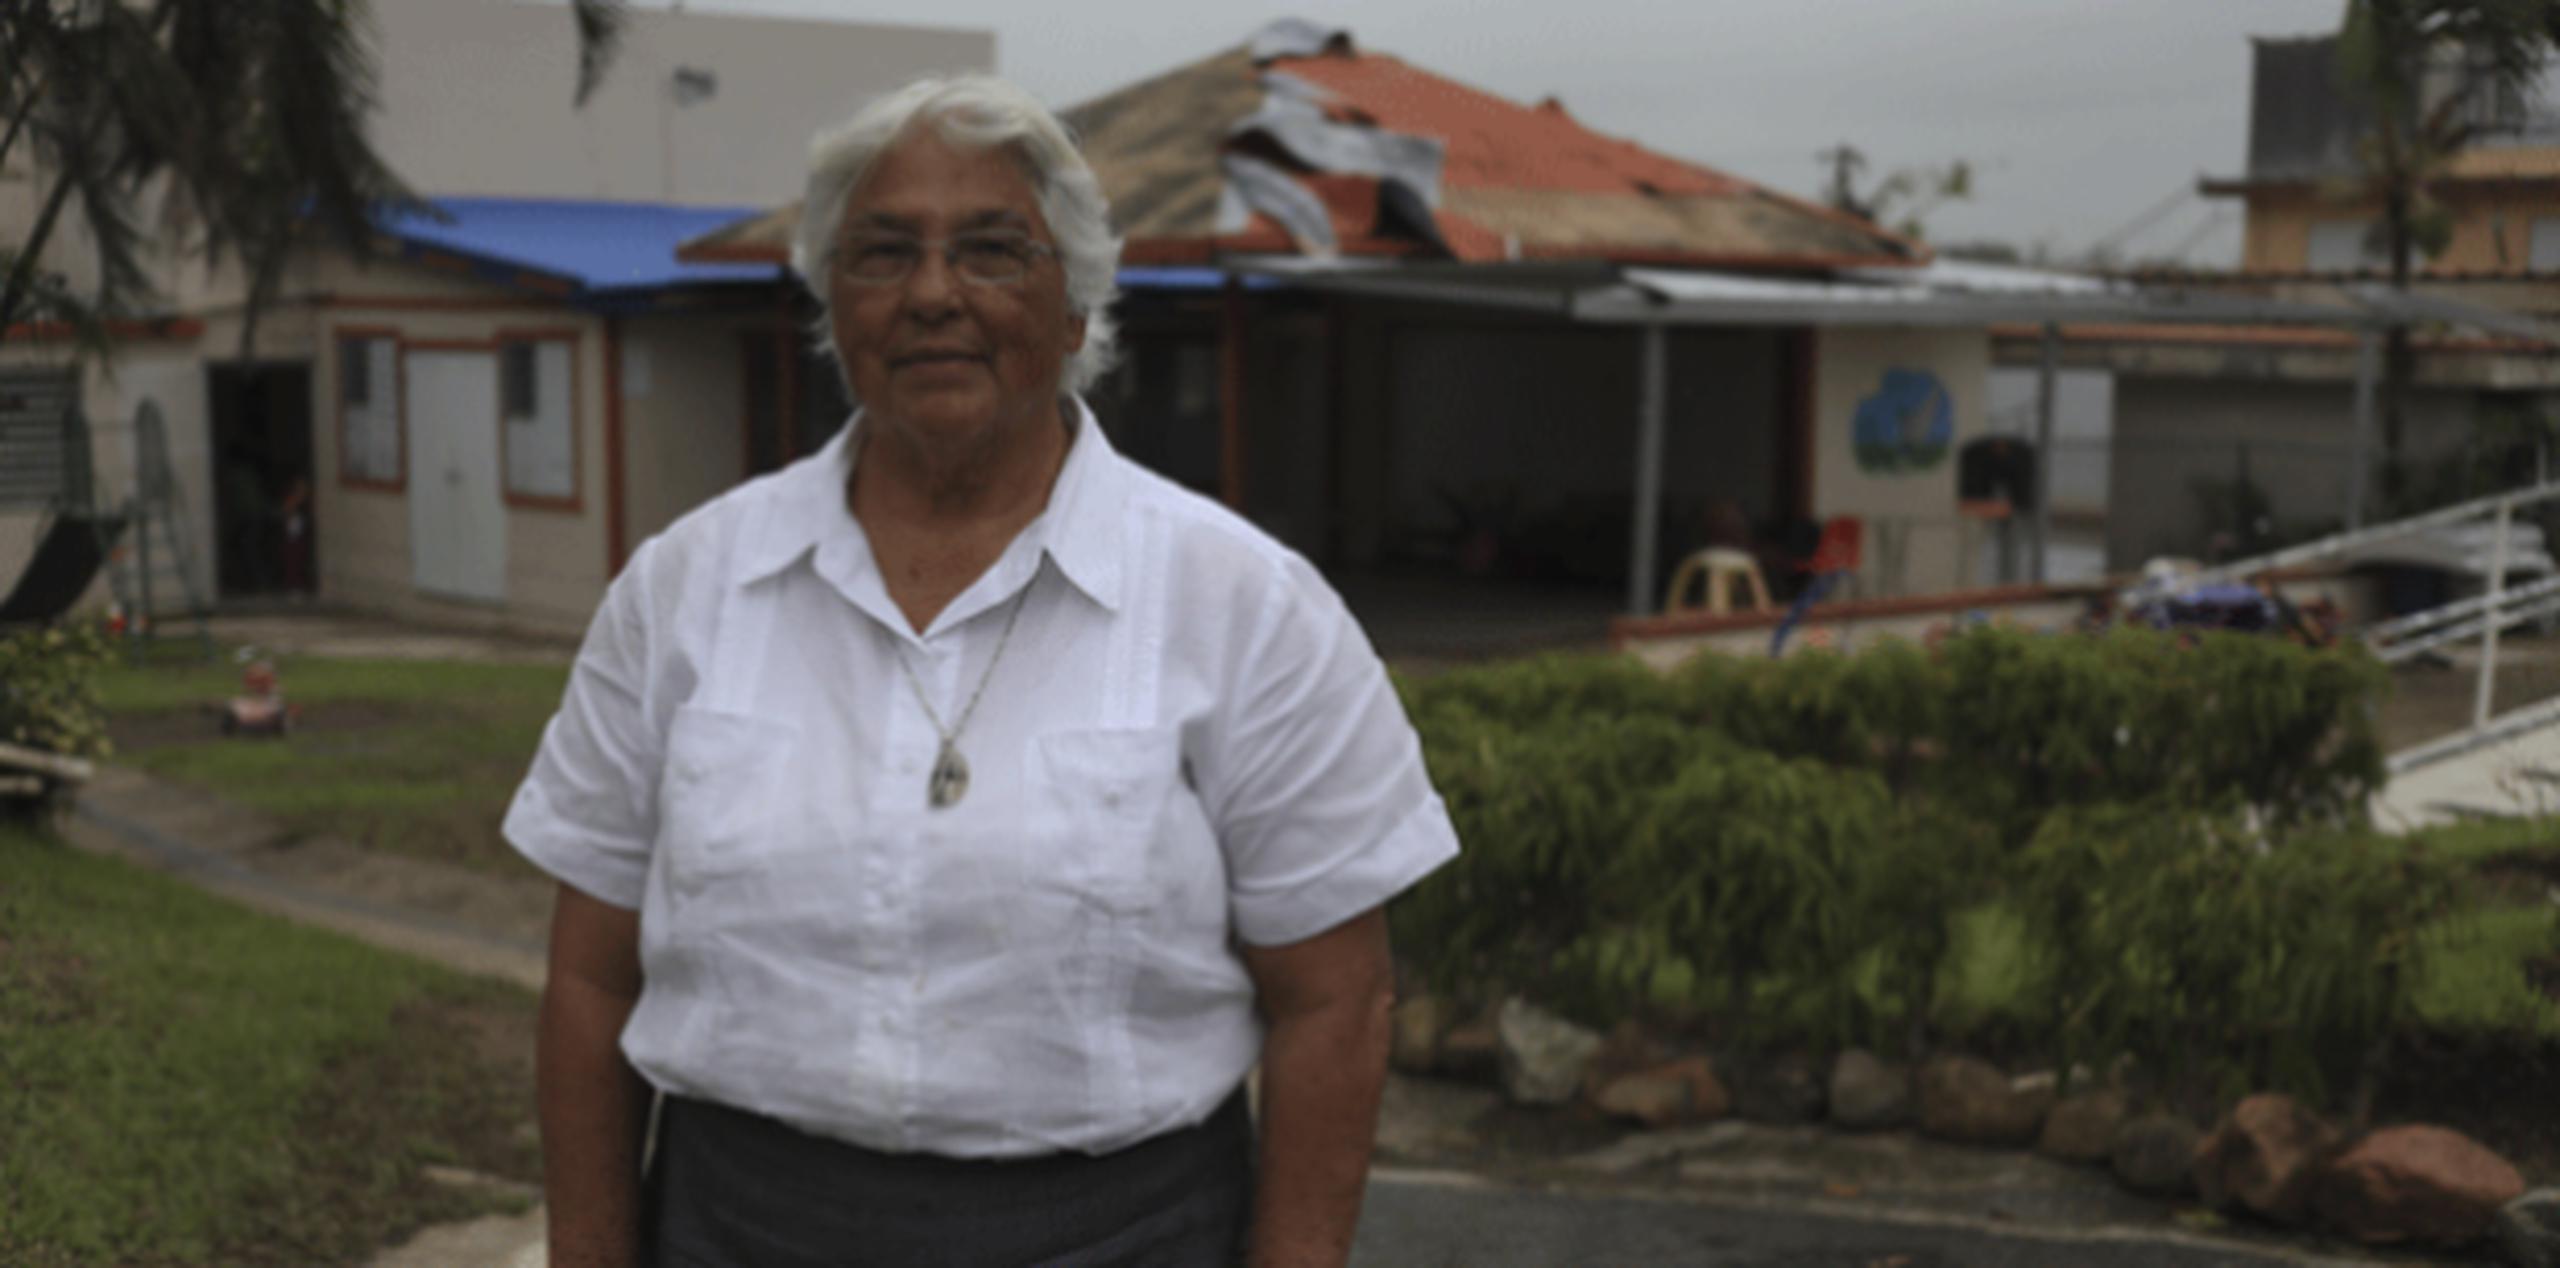 Sor Carmen Carmona es la directora ejecutiva del albergue fundado hace 36 años.
 (TERESA.CANINO@GFRMEDIA.COM)